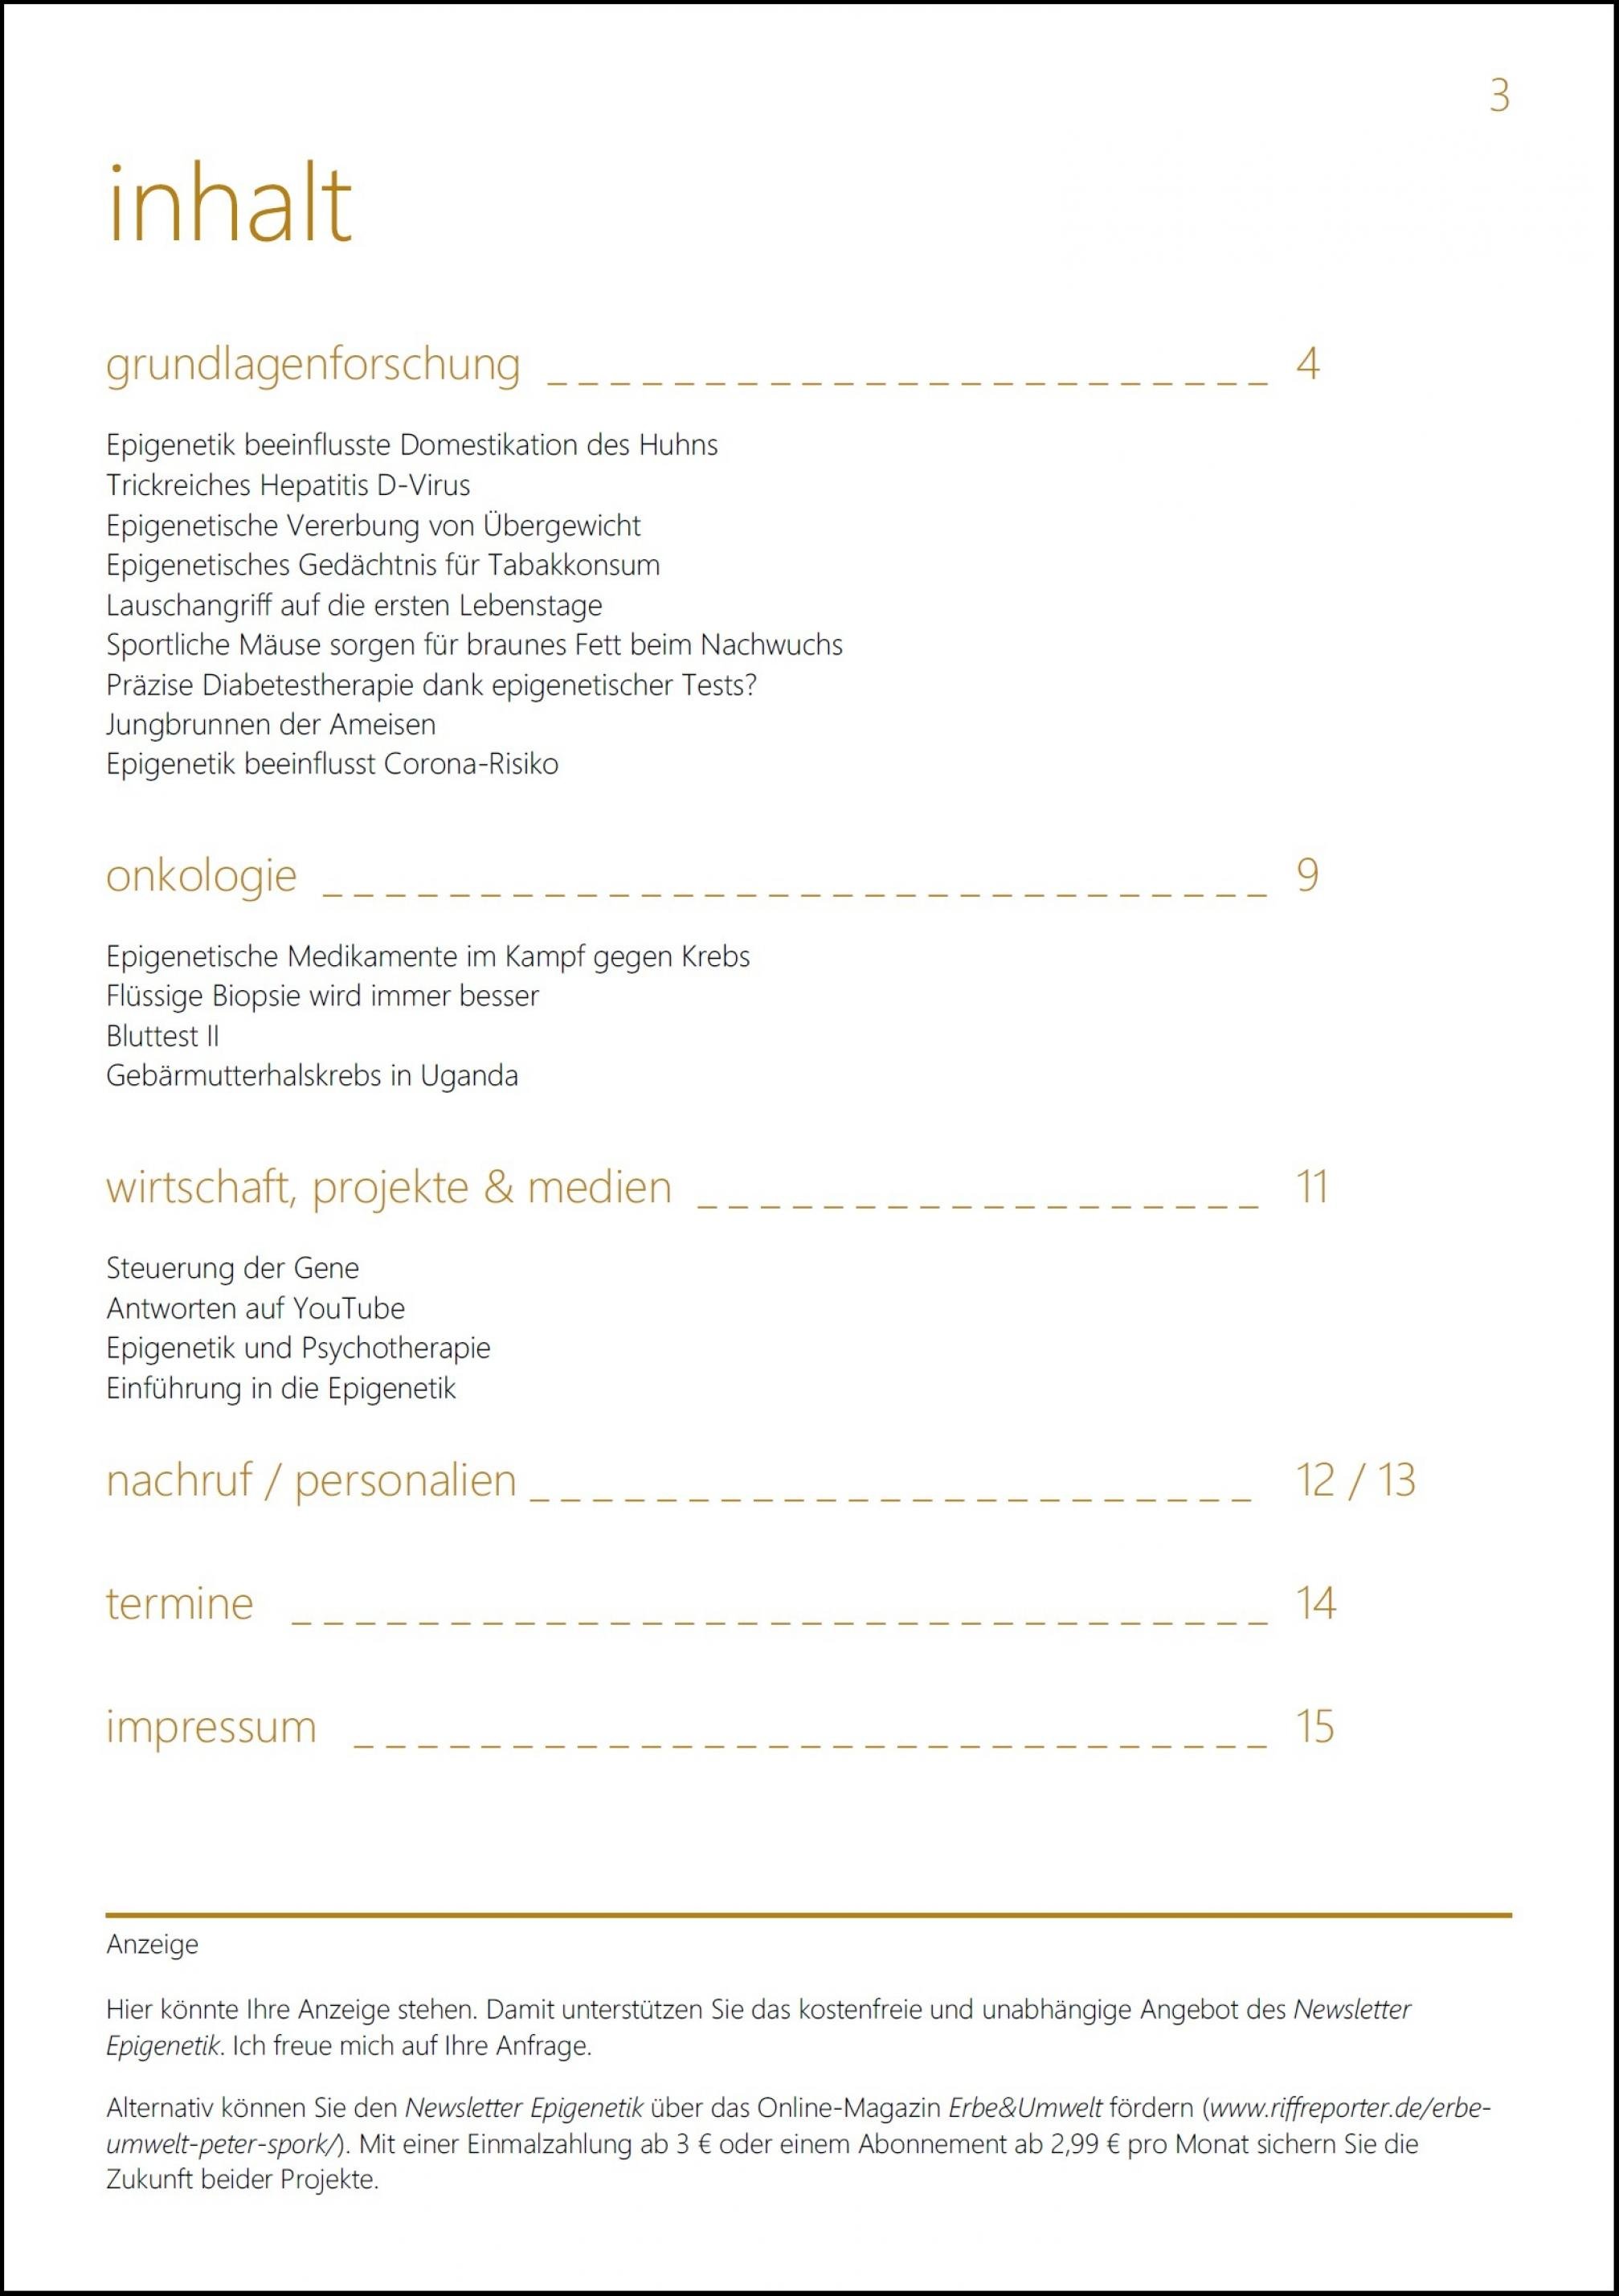 Seite 3, des Newsletter Epigenetik 33. Inhalt: Grundlagenforschung / Onkologie / Wirtschaft, Projekte & Medien / Personalien / Nachruf / Termine / Impressum